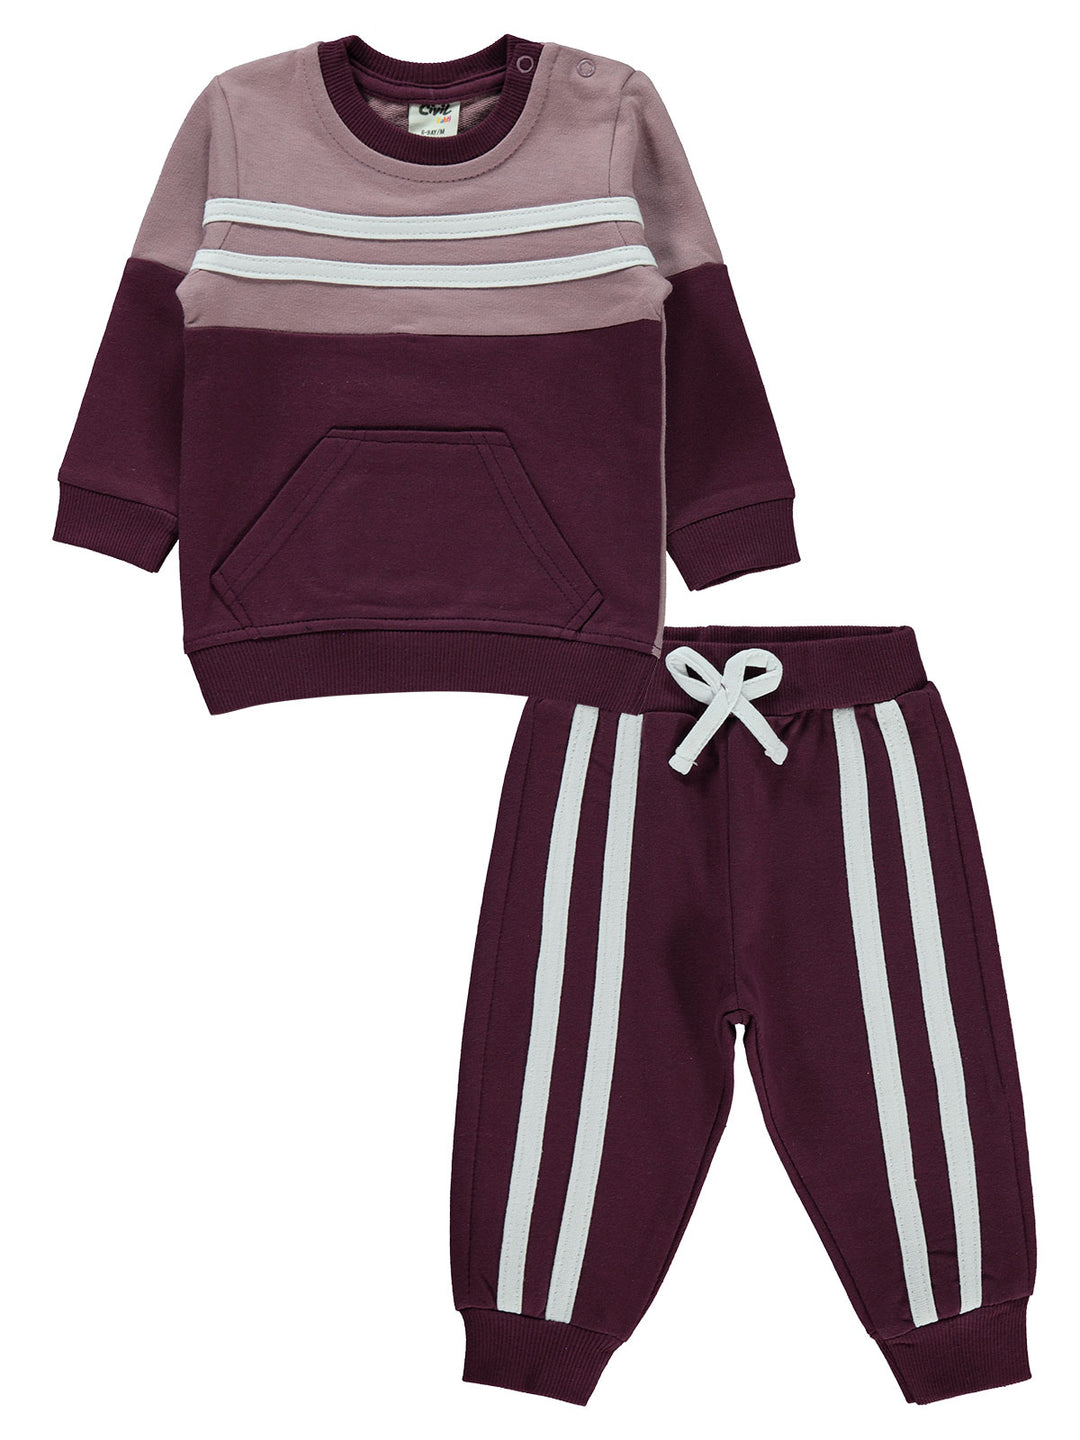 Civil Baby Pajama Suit Cotton L/S 2Pcs #7000-1 (W-22)